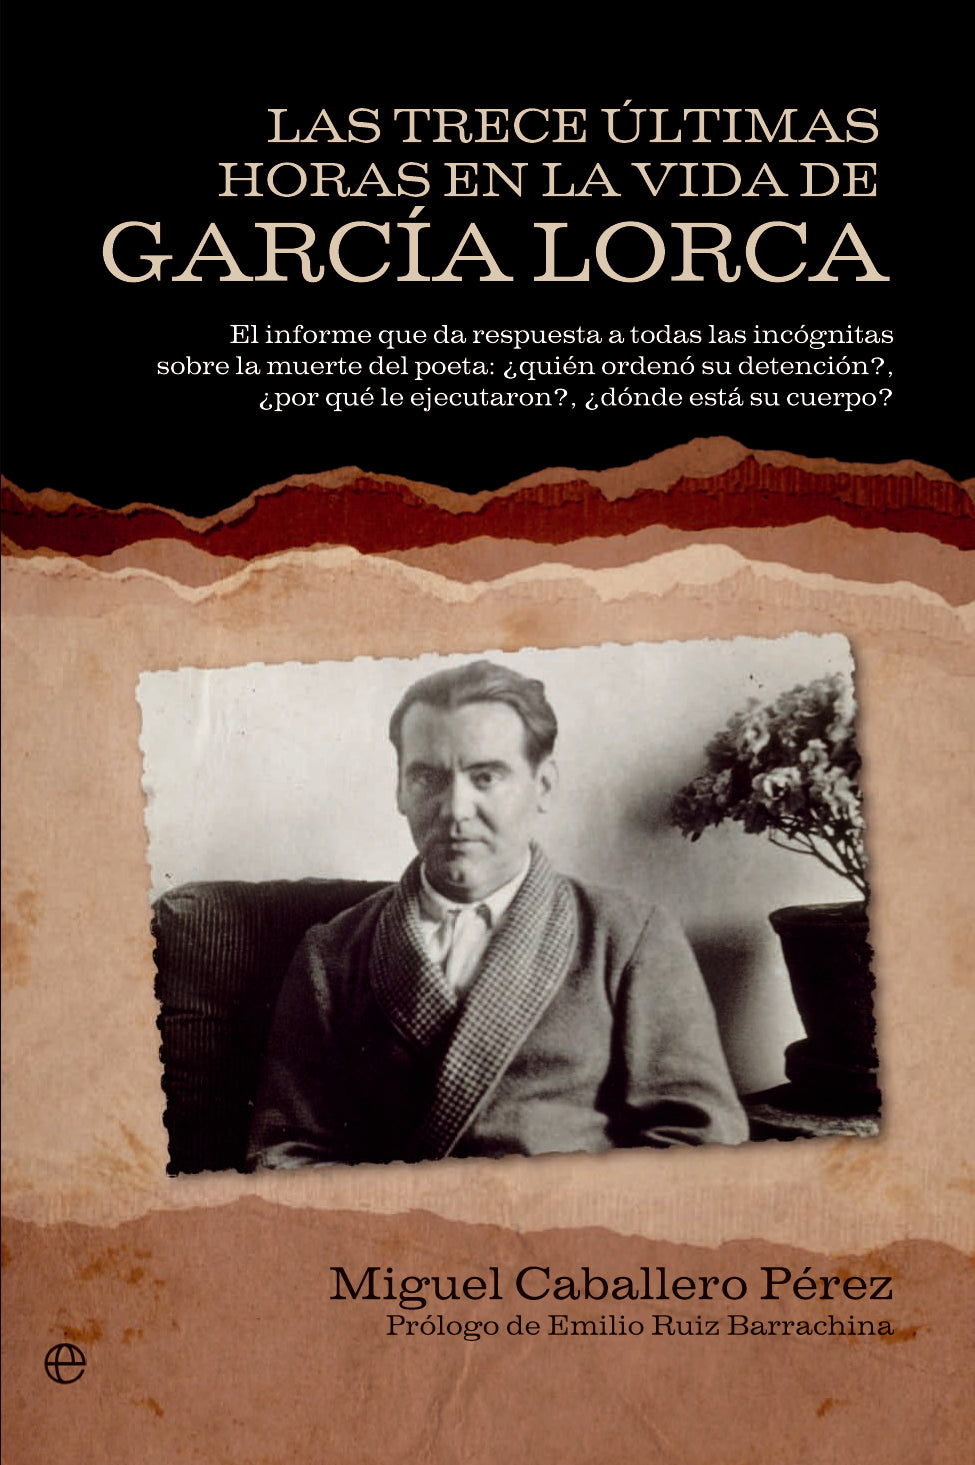 Las trece ultimas horas en la vida de García Lorca - Miguel Caballero Pérez